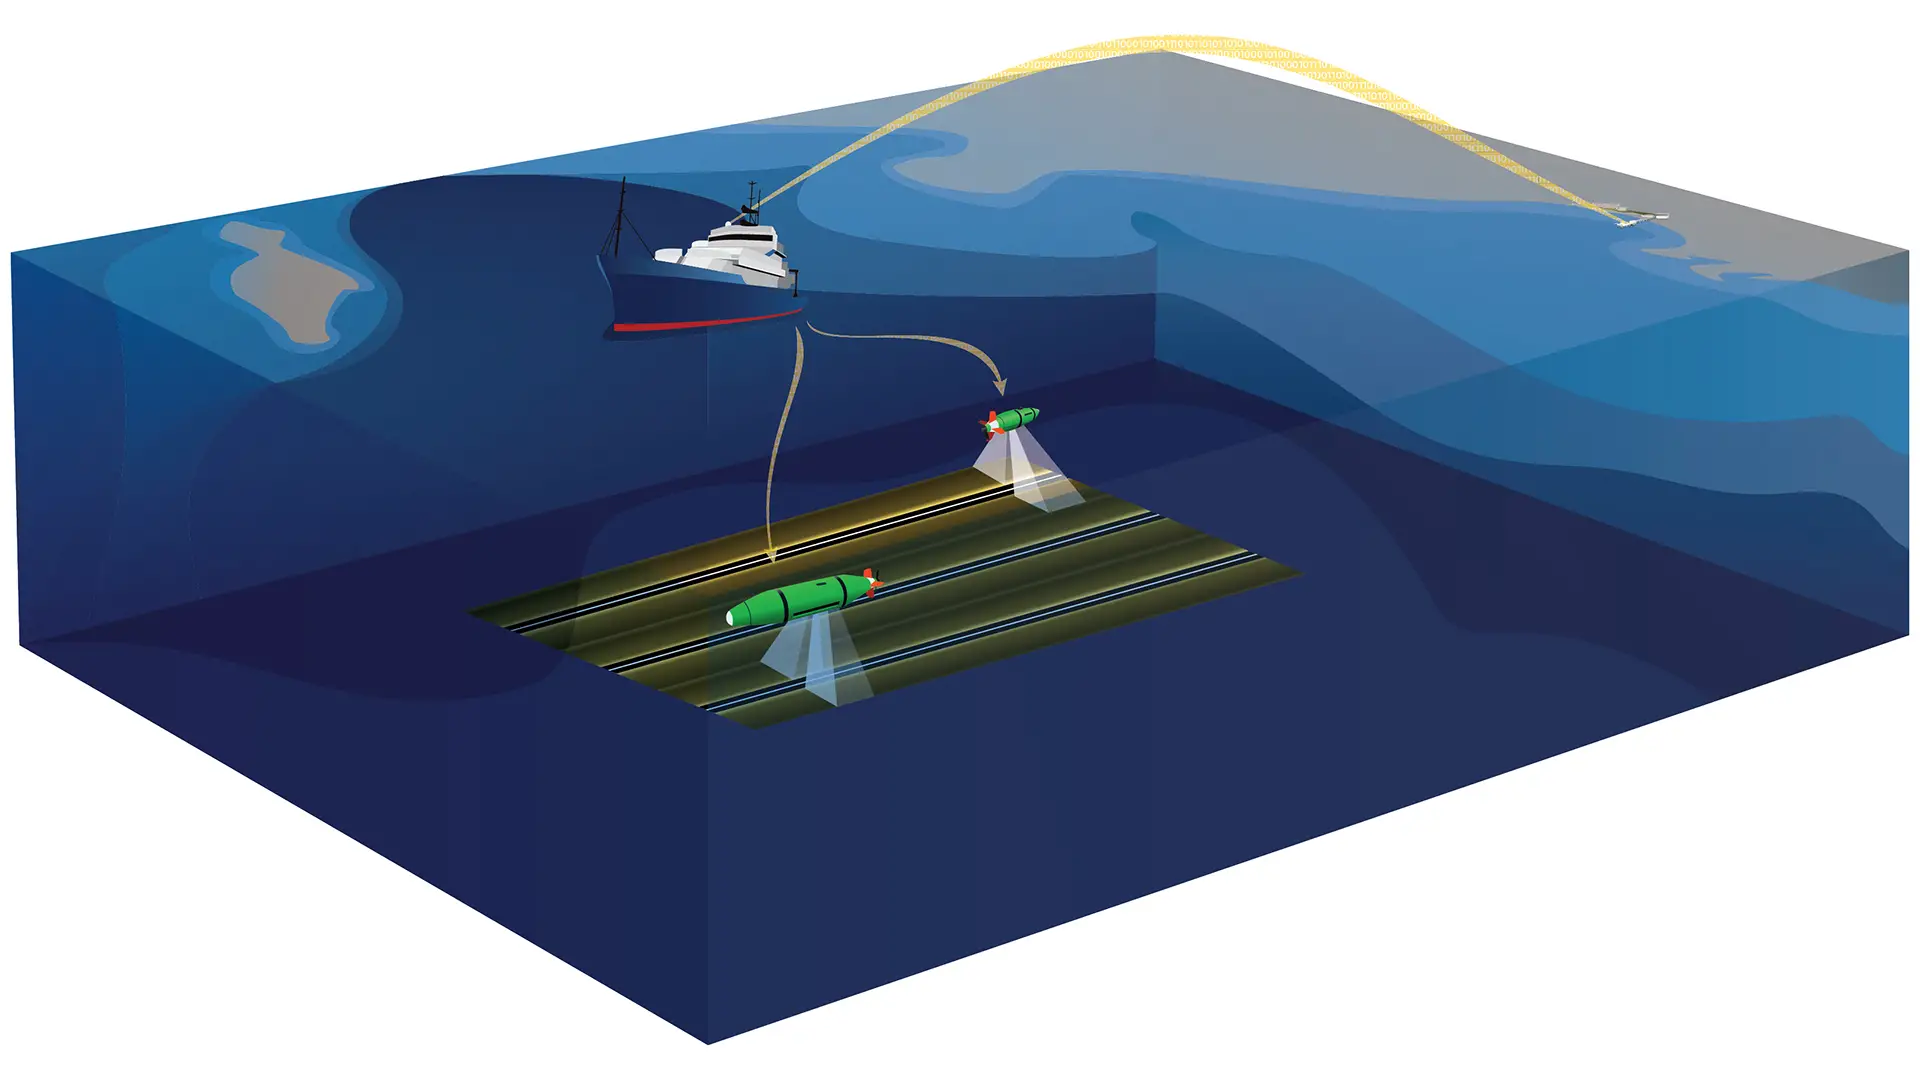 Le navire de recherche Sally Ride a supervisé l'étude sous-marine, diffusant en continu des signaux GPS sous-marins vers les véhicules sous-marins autonomes afin que les véhicules et leurs données de cartographie sonar soient très précises sur le fond marin. Les équipages sont restés en communication avec le rivage à l'aide de liaisons de données par satellite et ont pu partager des données avec des scientifiques restés à terre.